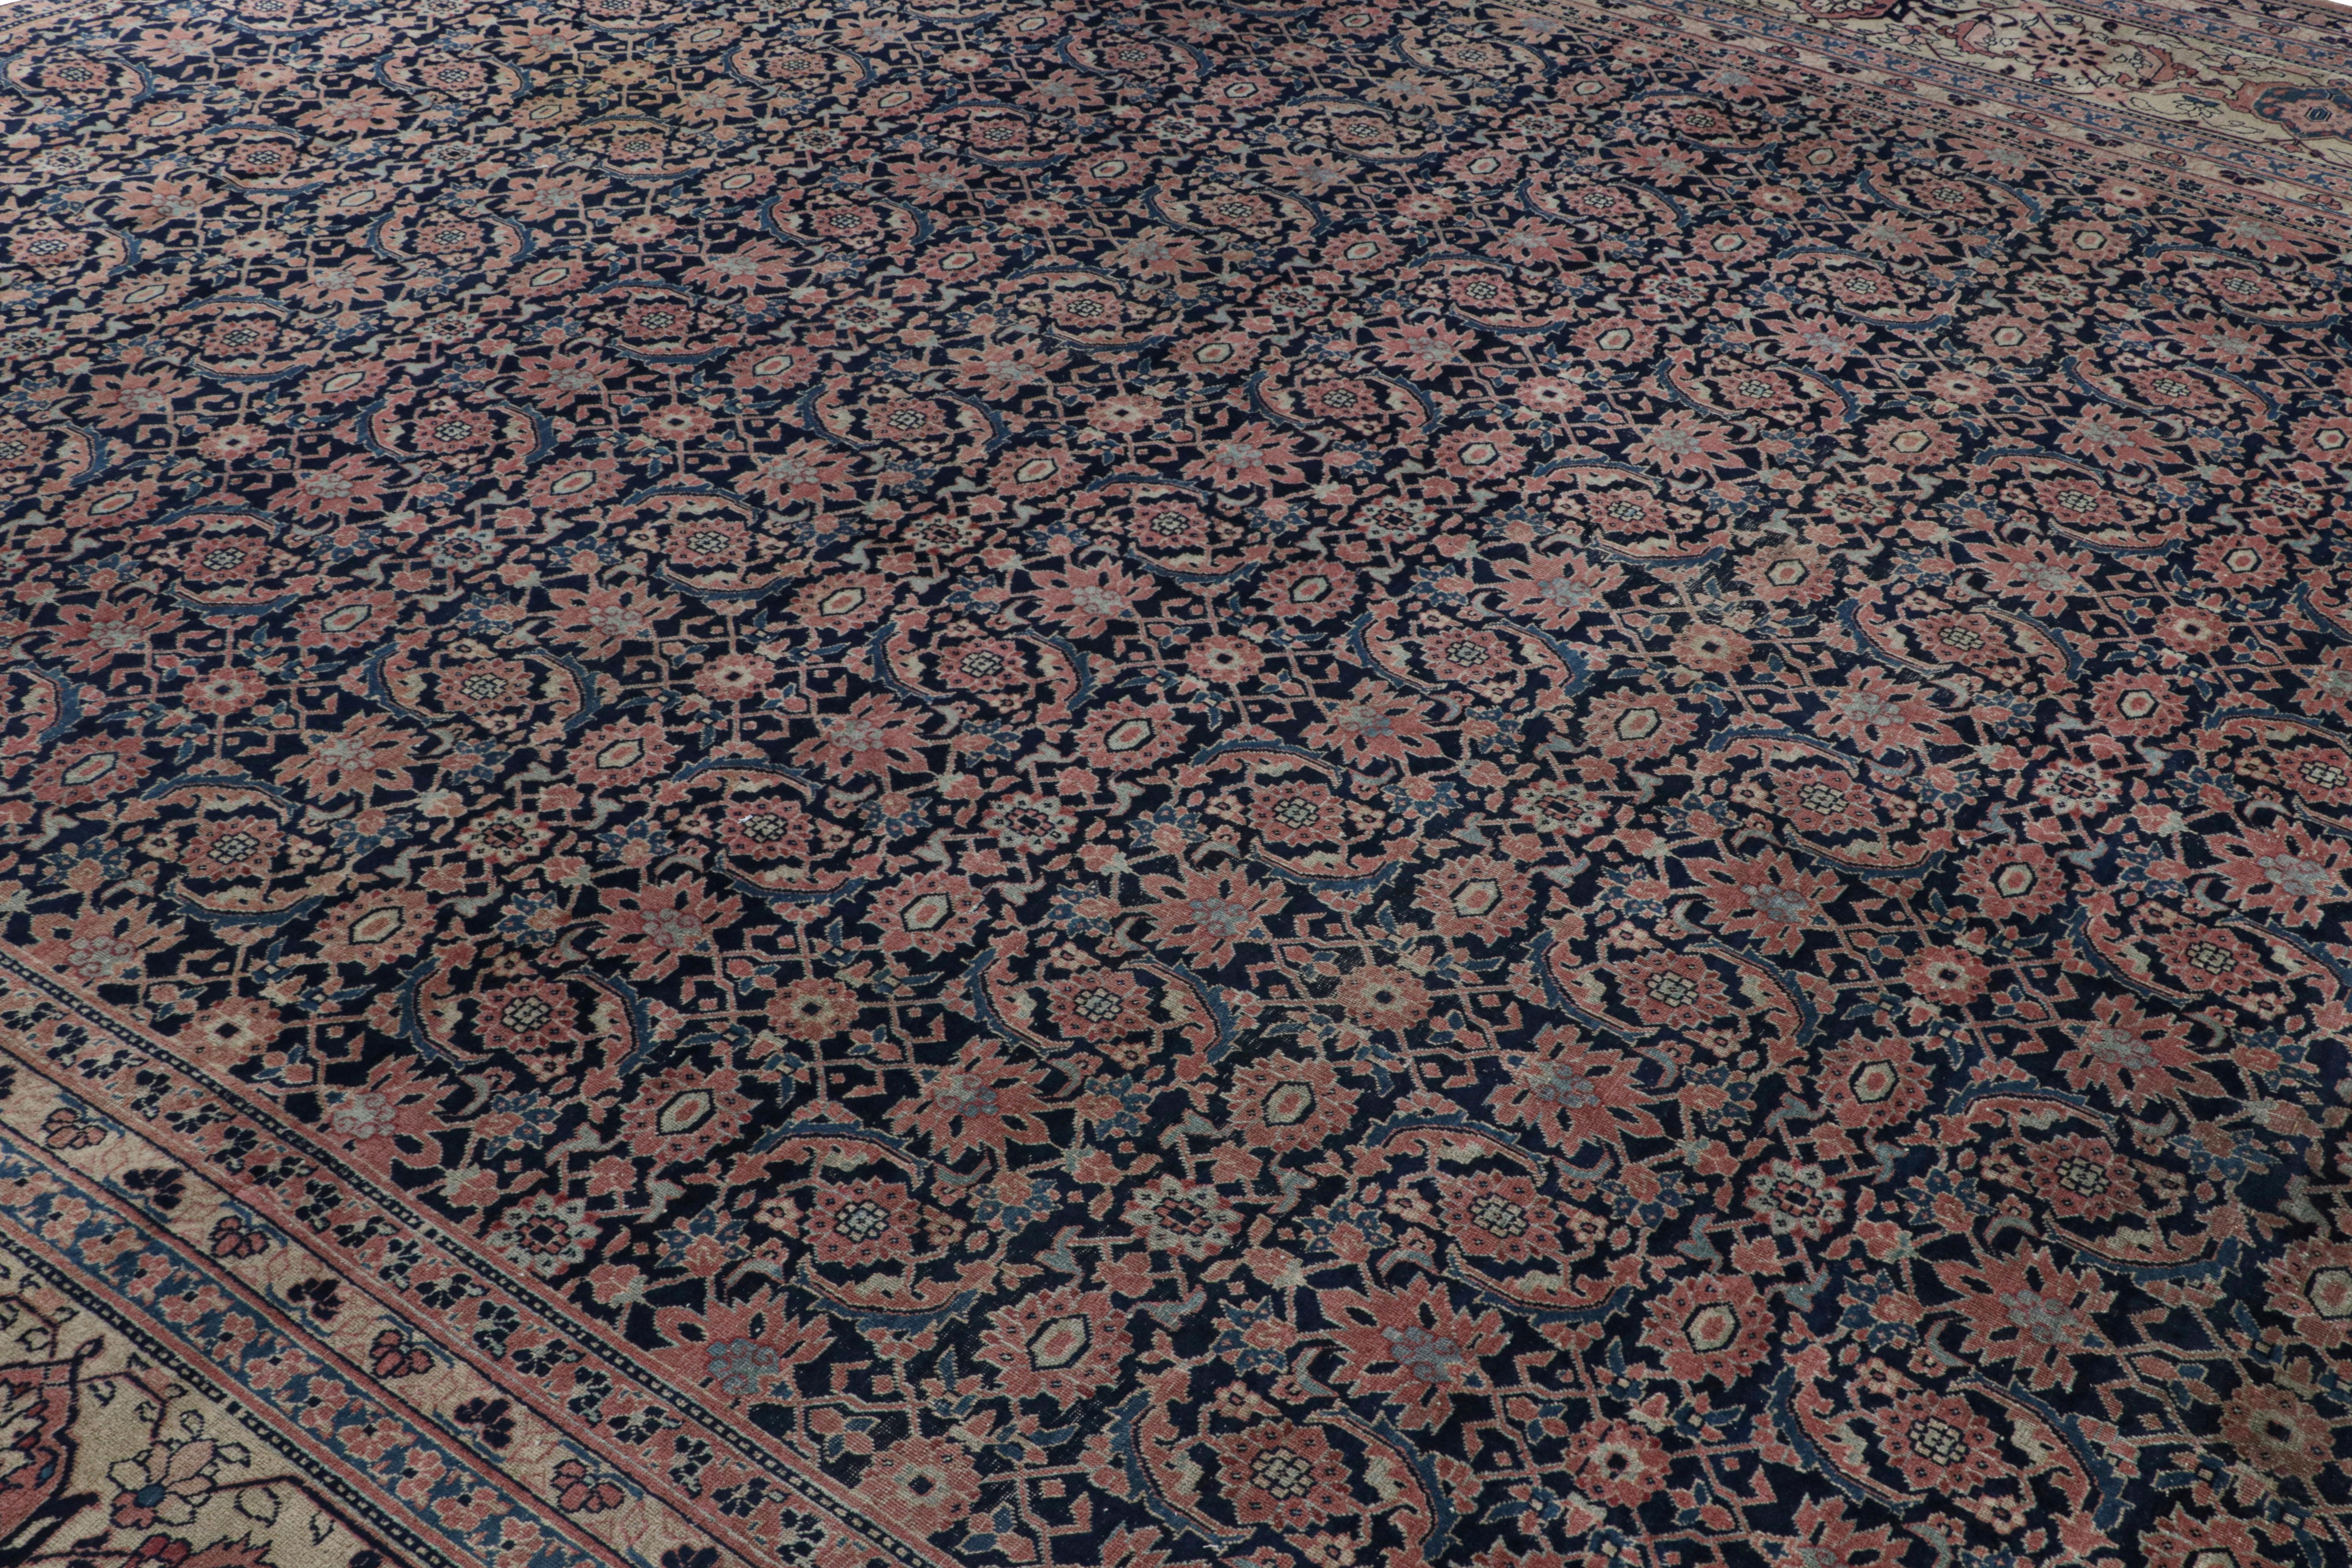 Dieser handgeknüpfte Wollteppich (ca. 1920-1930) im Format 13x17 ist ein seltener antiker Perserteppich aus Khorassan. 

Über das Design:

Der Teppich ist mit einem marineblauen Feld und hellgoldenen Bordüren versehen, die florale Muster in